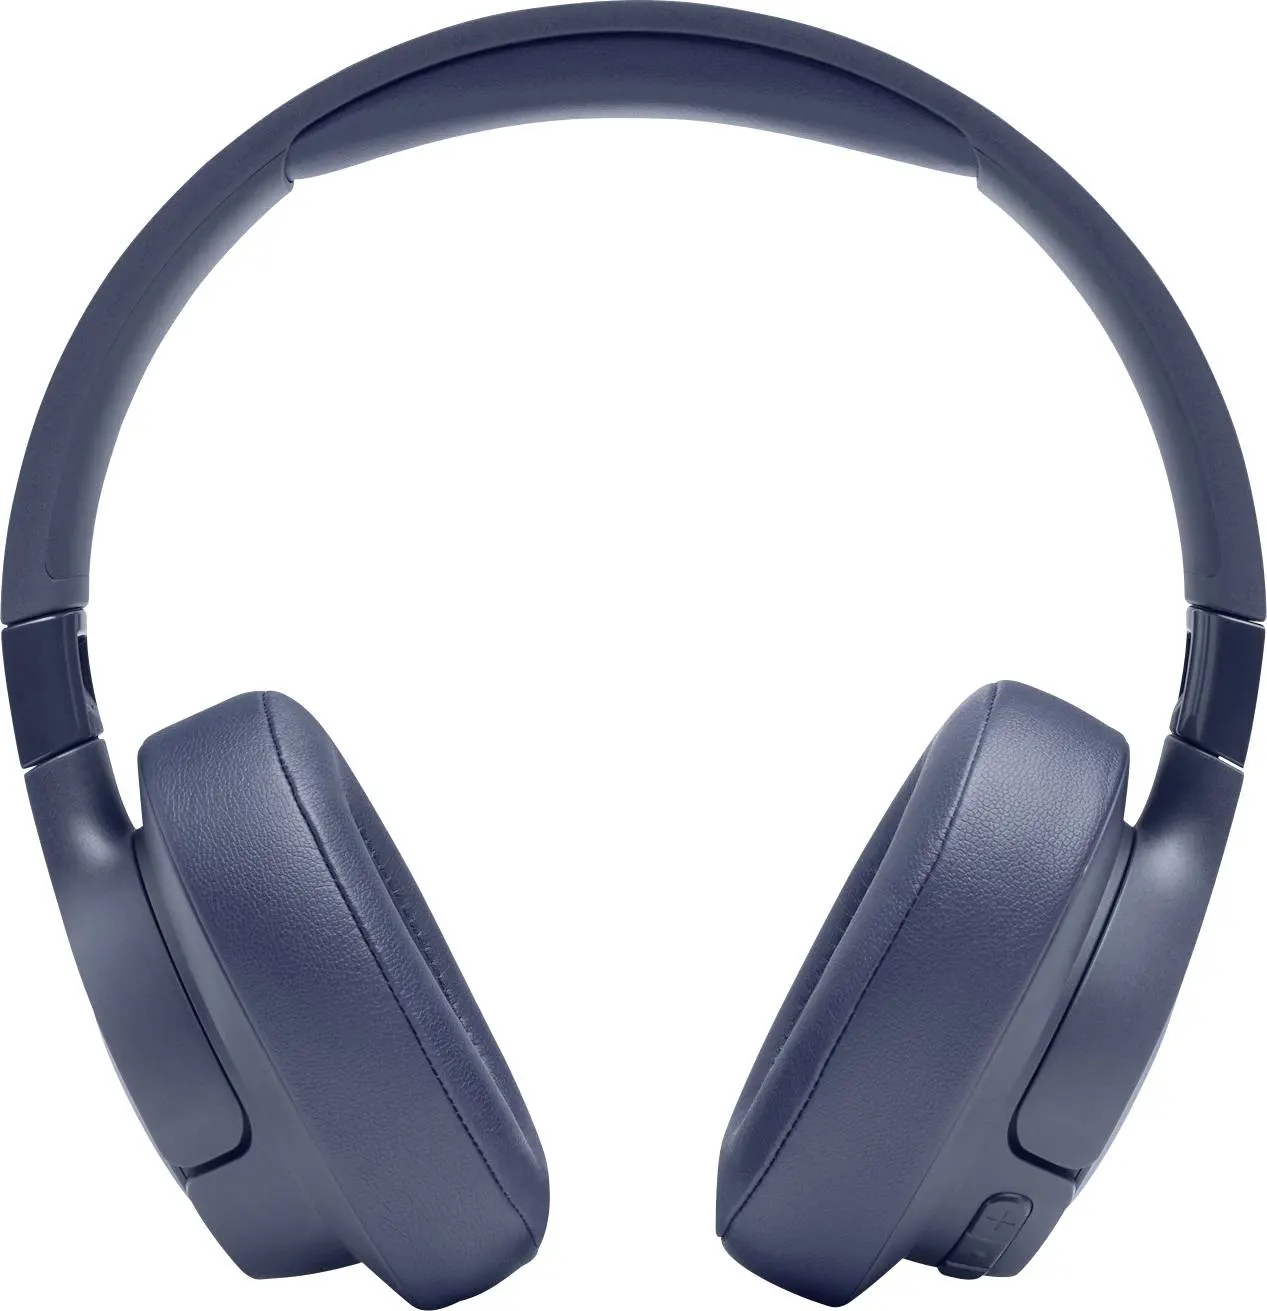 سماعة رأس لاسلكية جي بي ال تون 710BT للألعاب، صوت جهير نقي عالي الجودة، أزرق